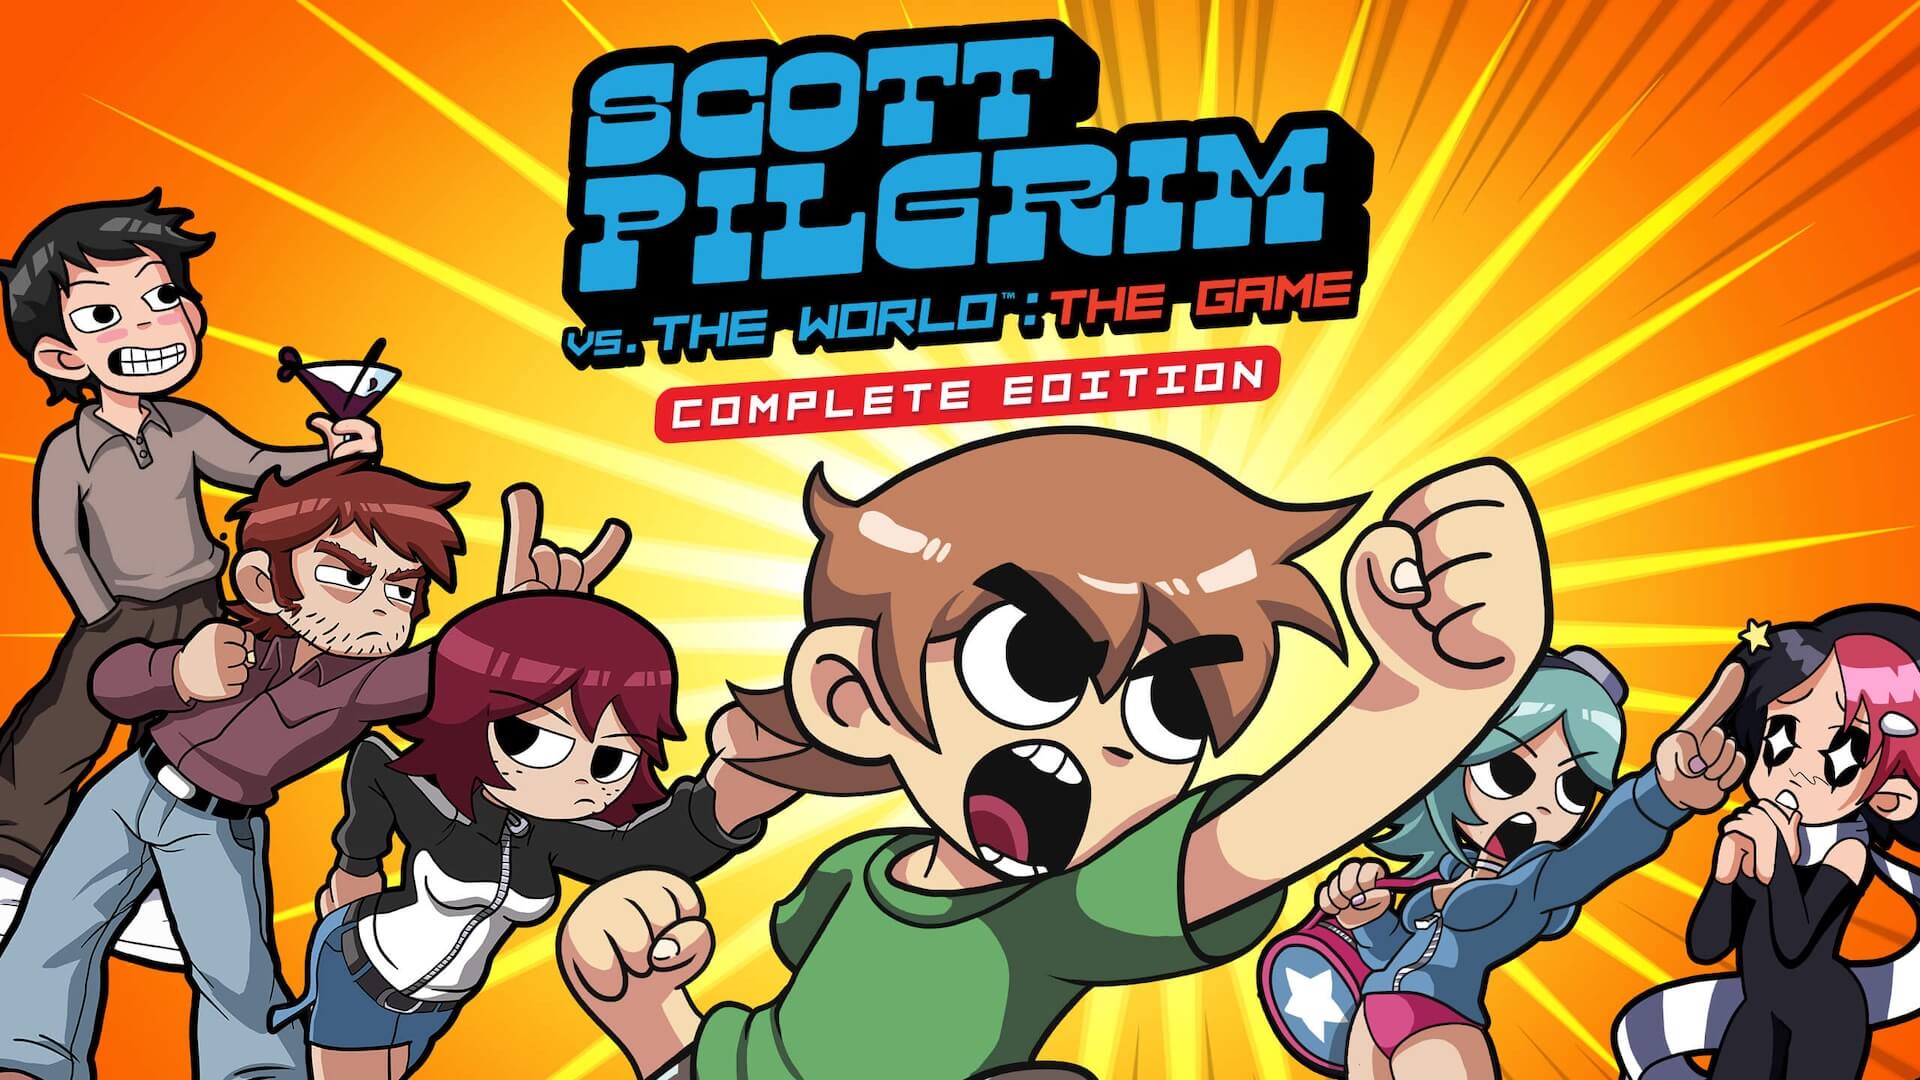 Scott Pilgrim vs. the World: The Game ってどんなゲーム？